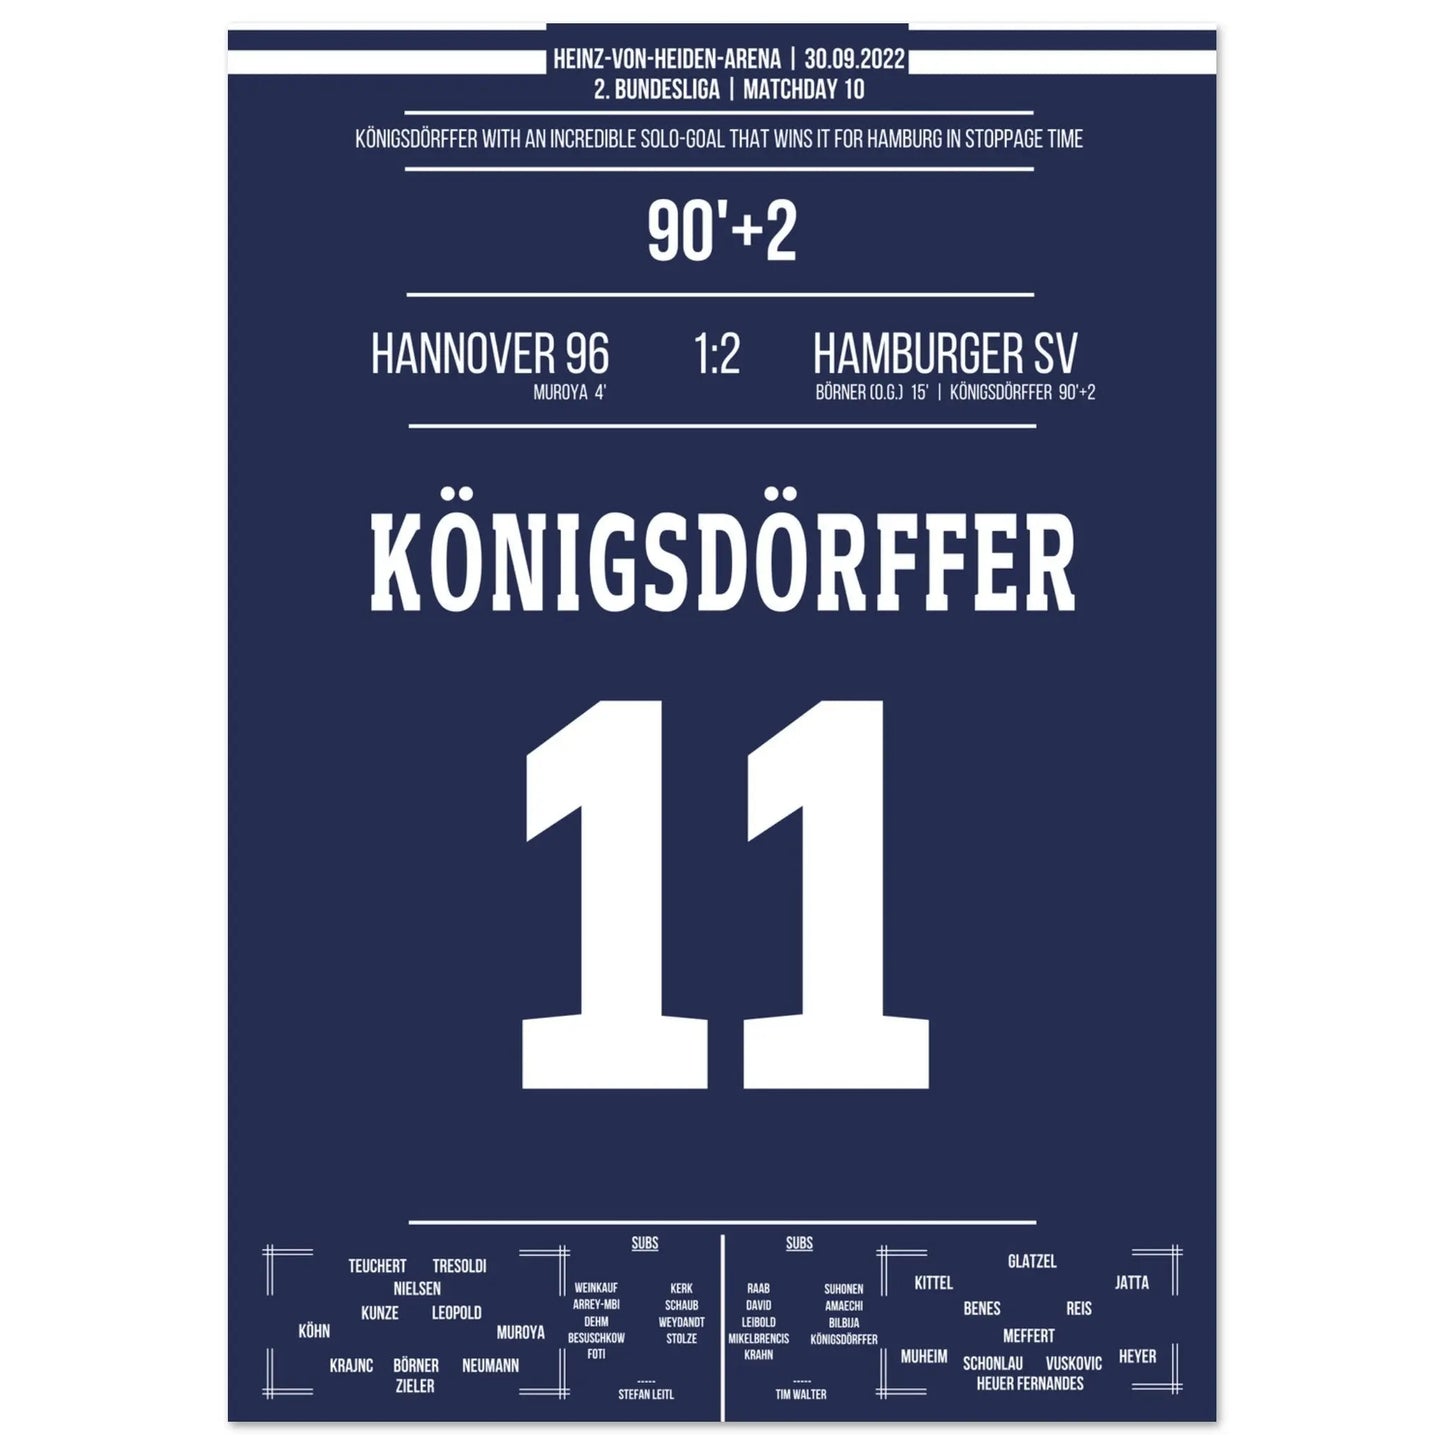 Le solo de classe mondiale de Königsdörffer pour le but vainqueur à Hanovre